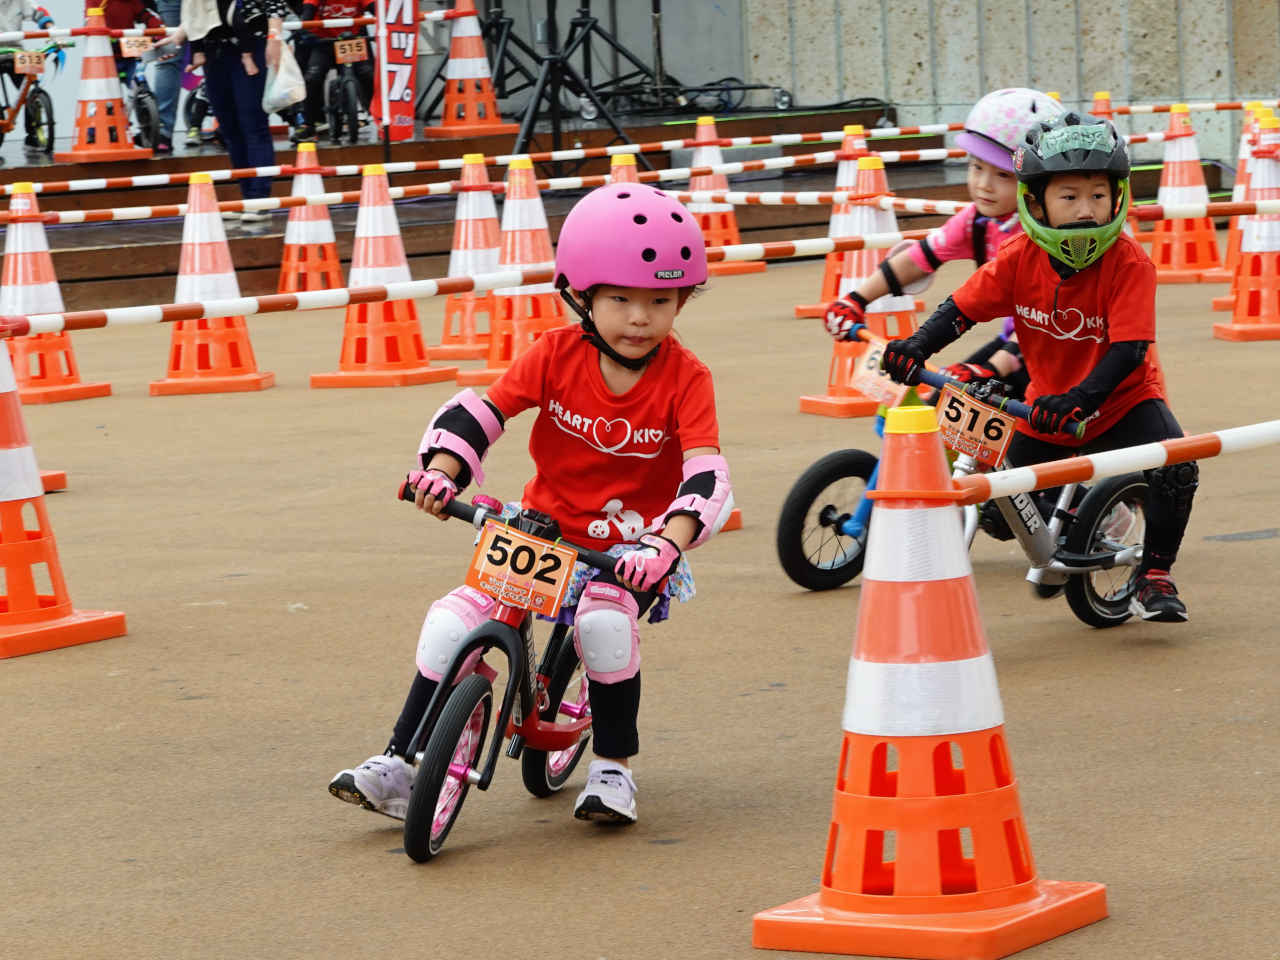 ストライダー大会 ジャパンカップキックバイク大会に出場する女の子